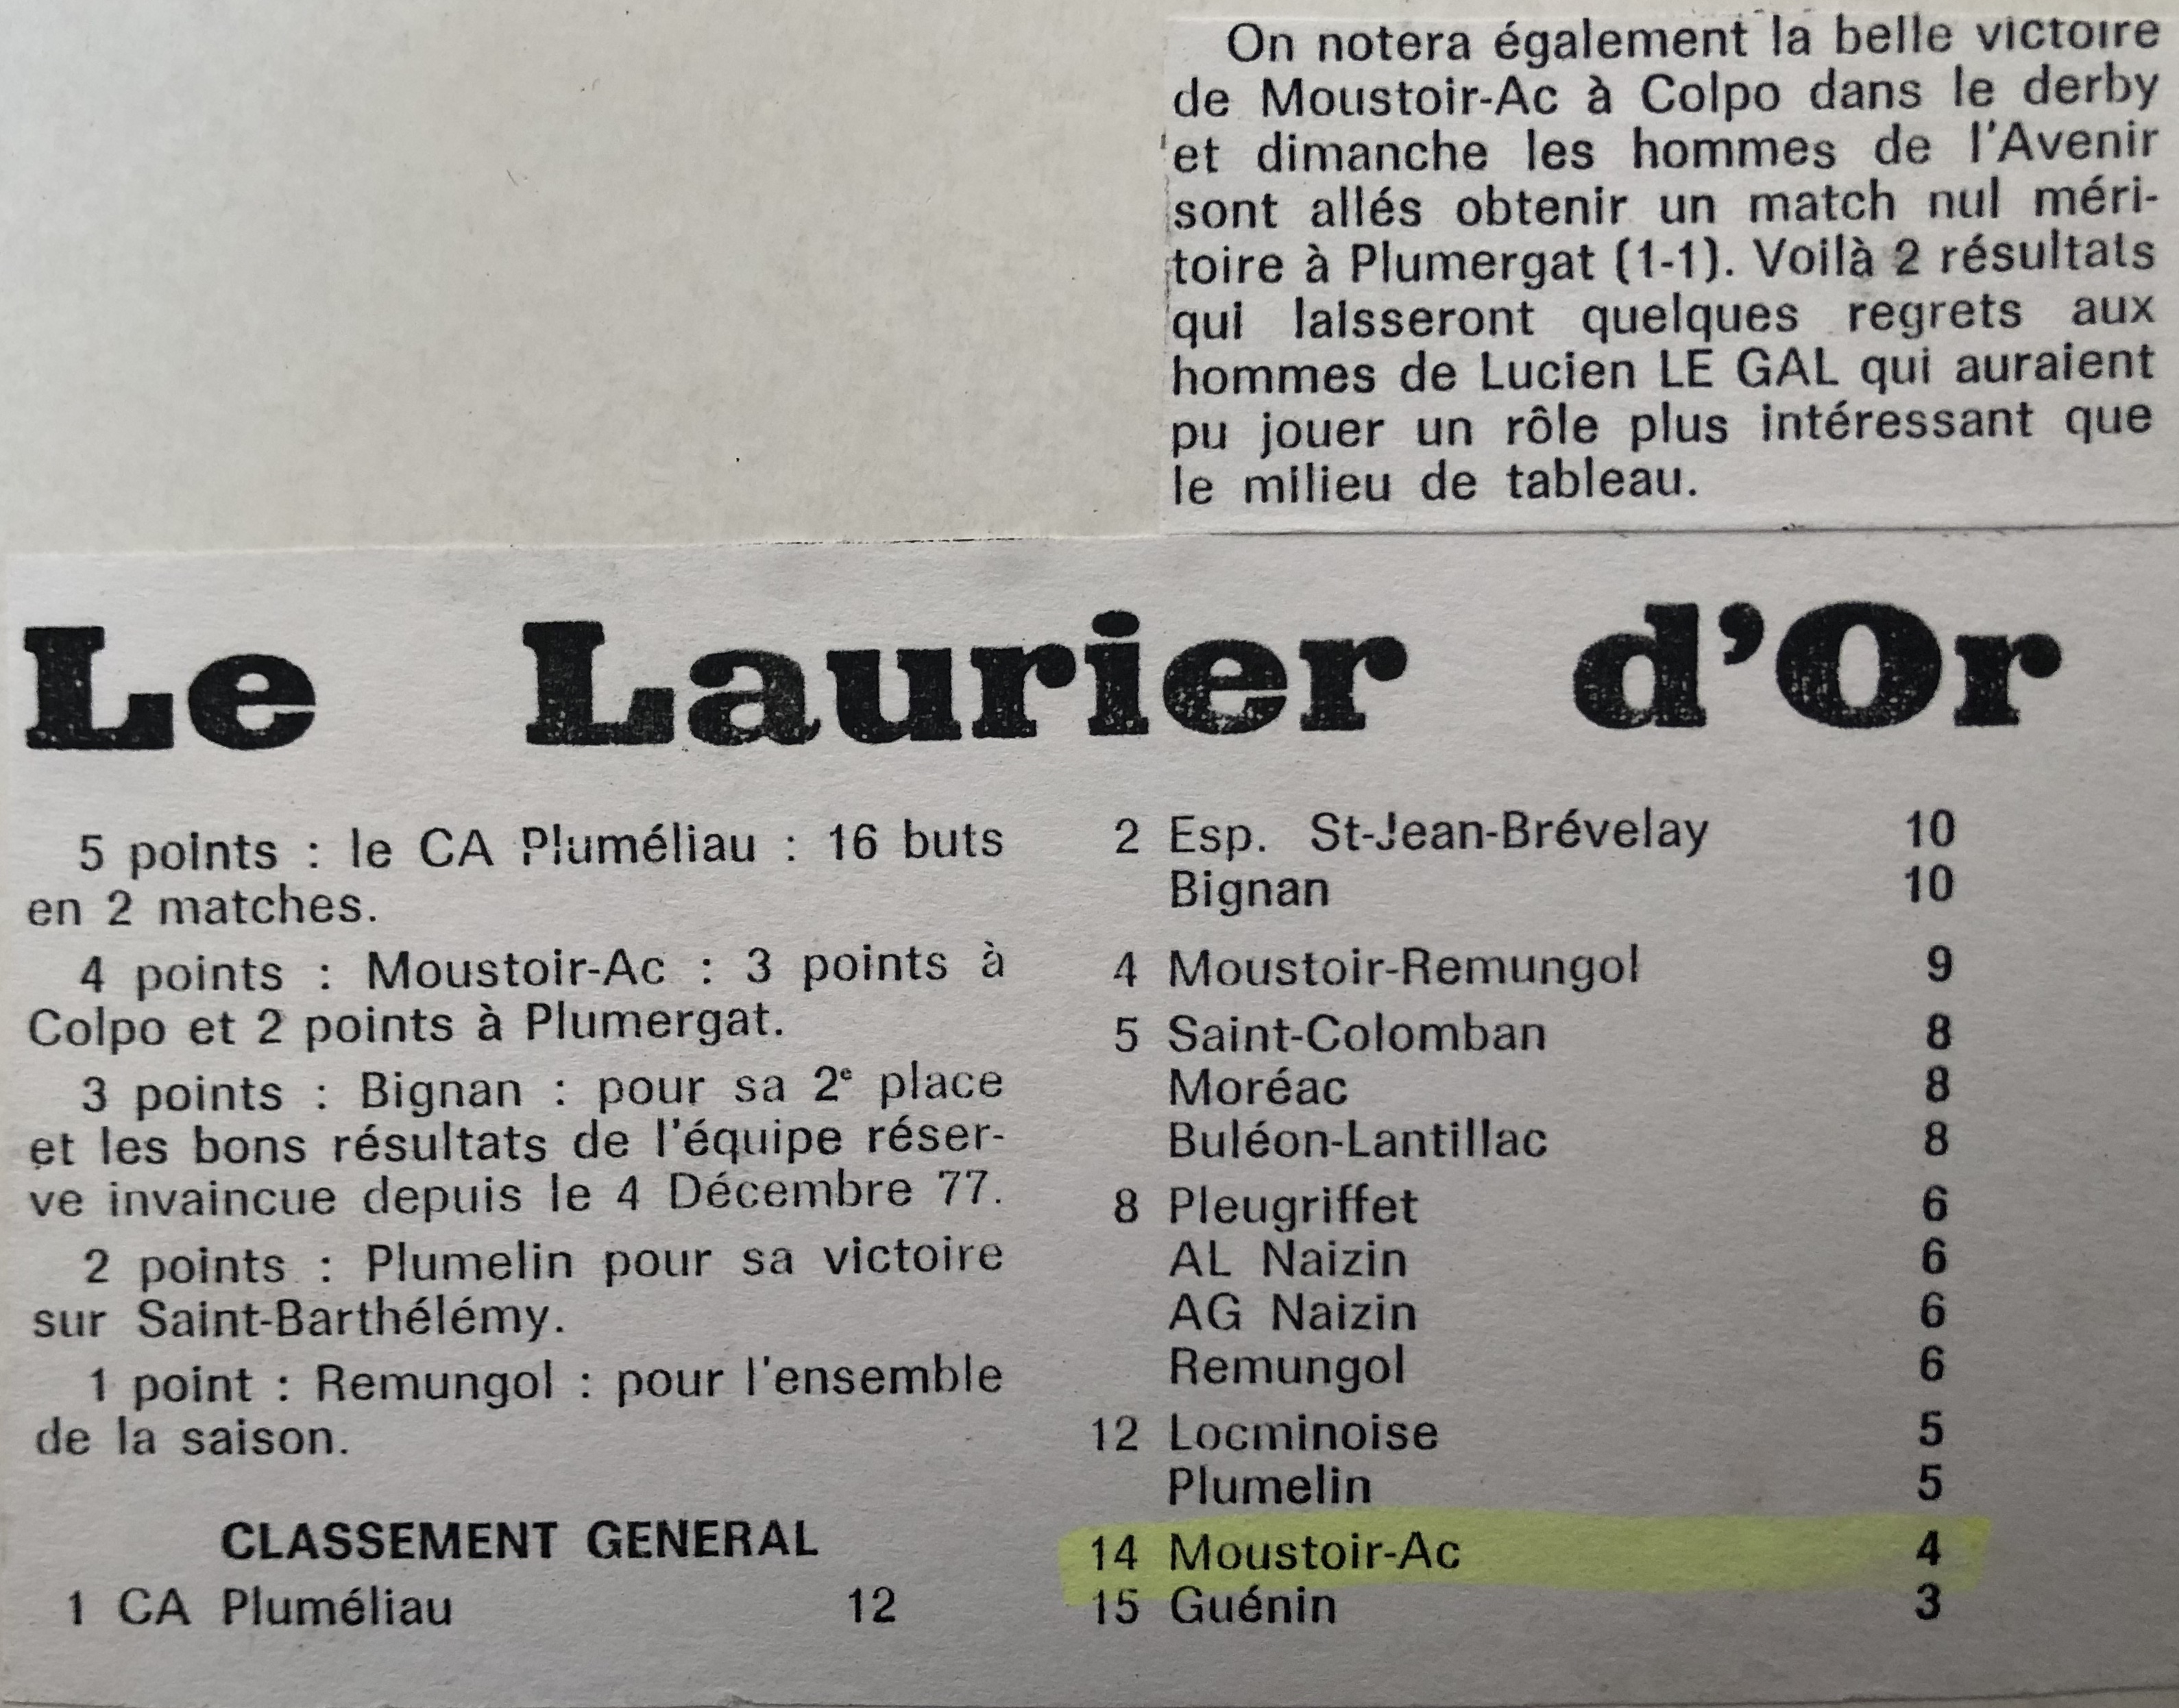 Le Laurier d'Or, Saison 1977/78